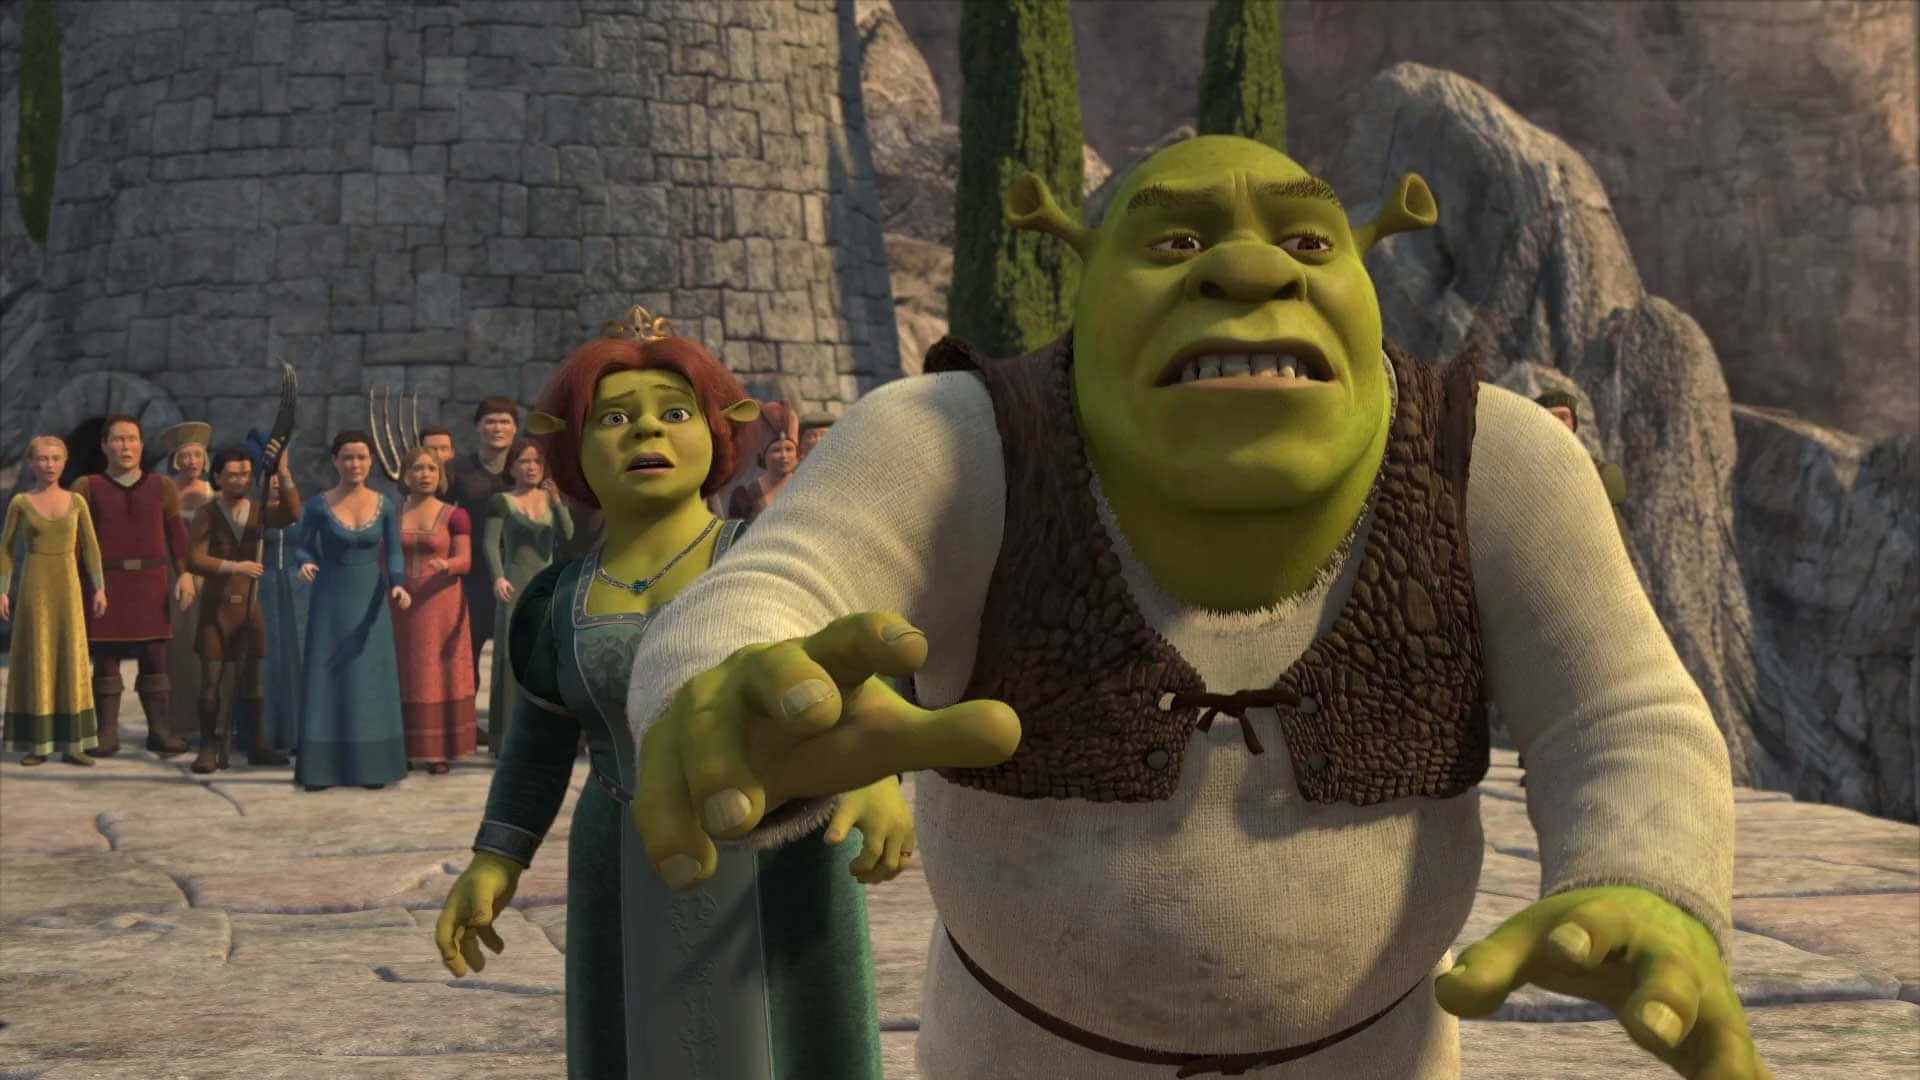 Billeder af Shrek pynte denne vægtapet.